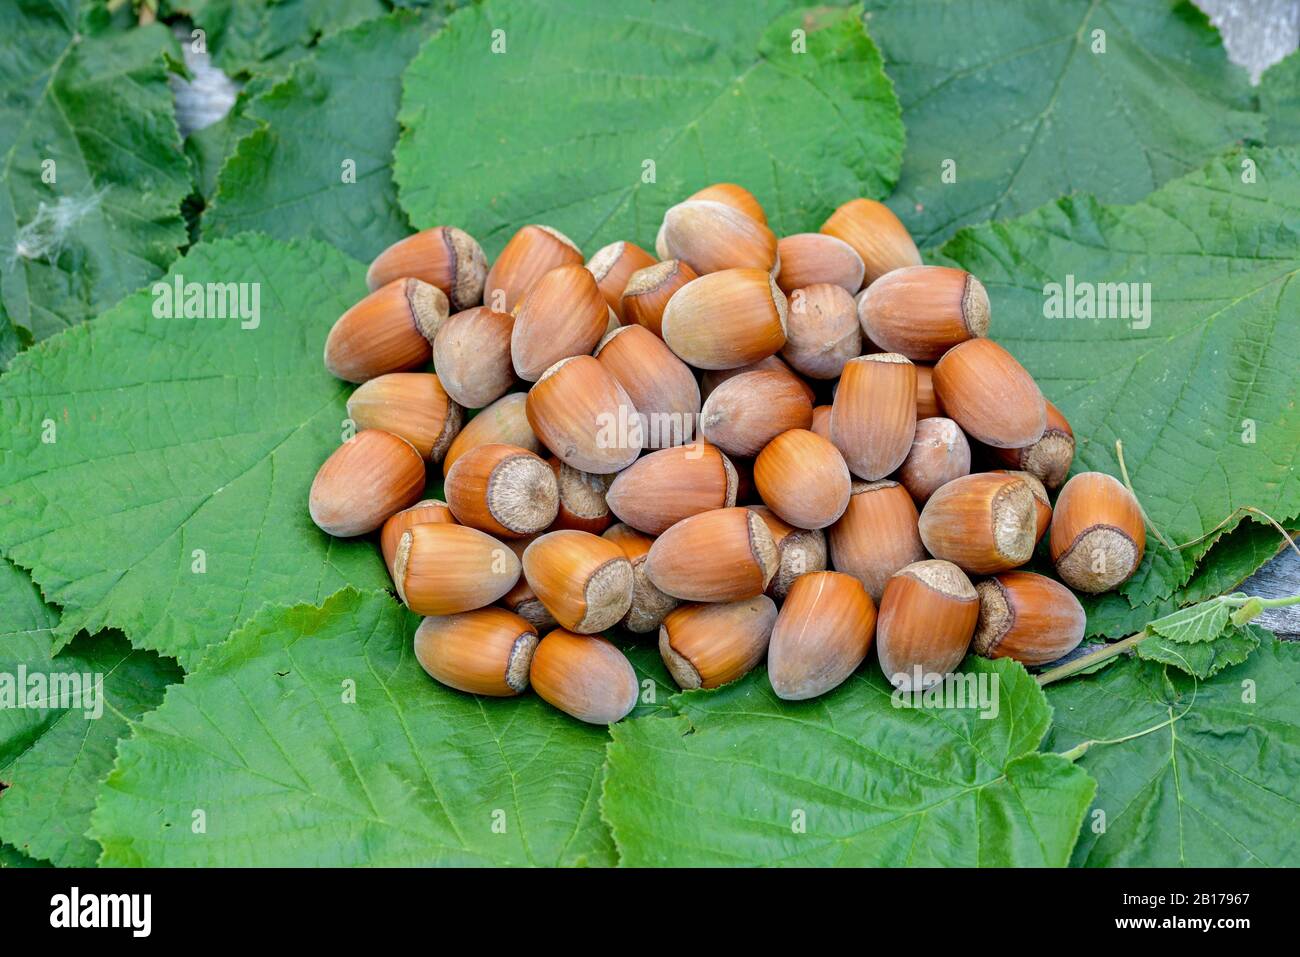 Common hazel (Corylus 'Gunslebener Zellernuss', Corylus Gunslebener Zellernuss), nuts of the cultivar Gunslebener Zellernuss, Germany, Saxony Stock Photo